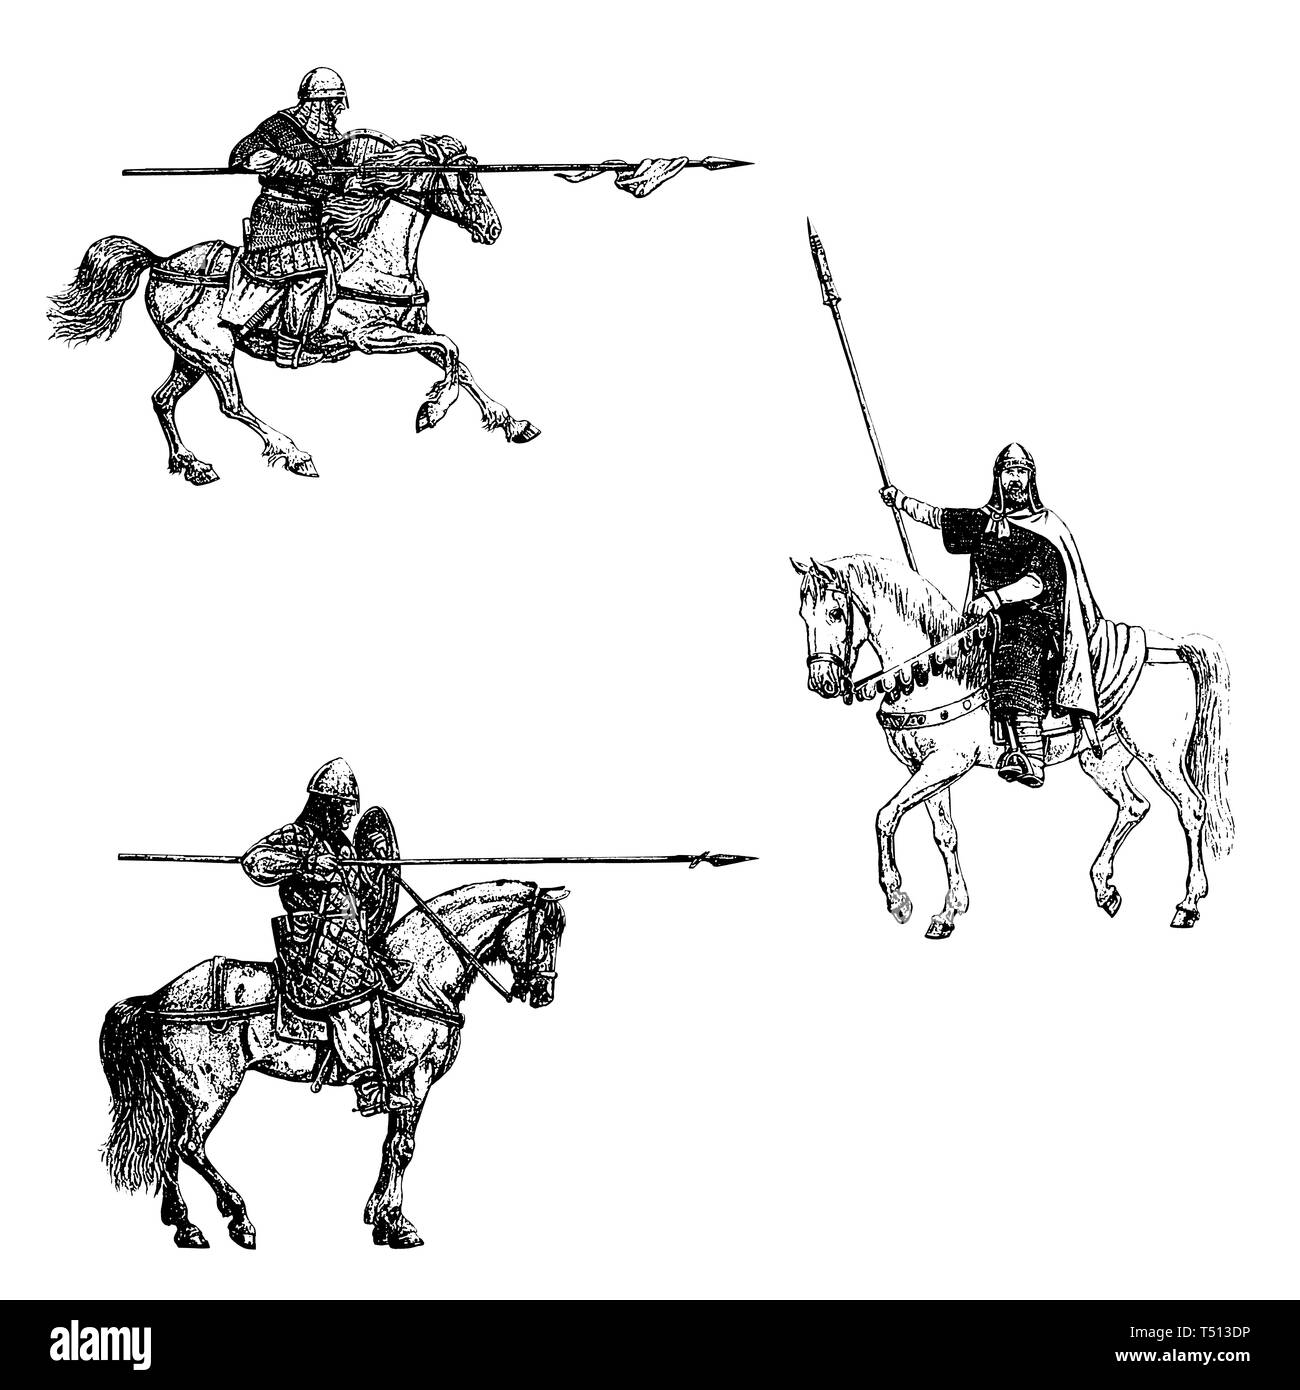 Mittelalterliche Ritter Abbildung montiert. Ritter zu Pferd. Satz von 3 mittelalterlichen Kreuzfahrer. Schwarz-weiß-Zeichnung. Stockfoto